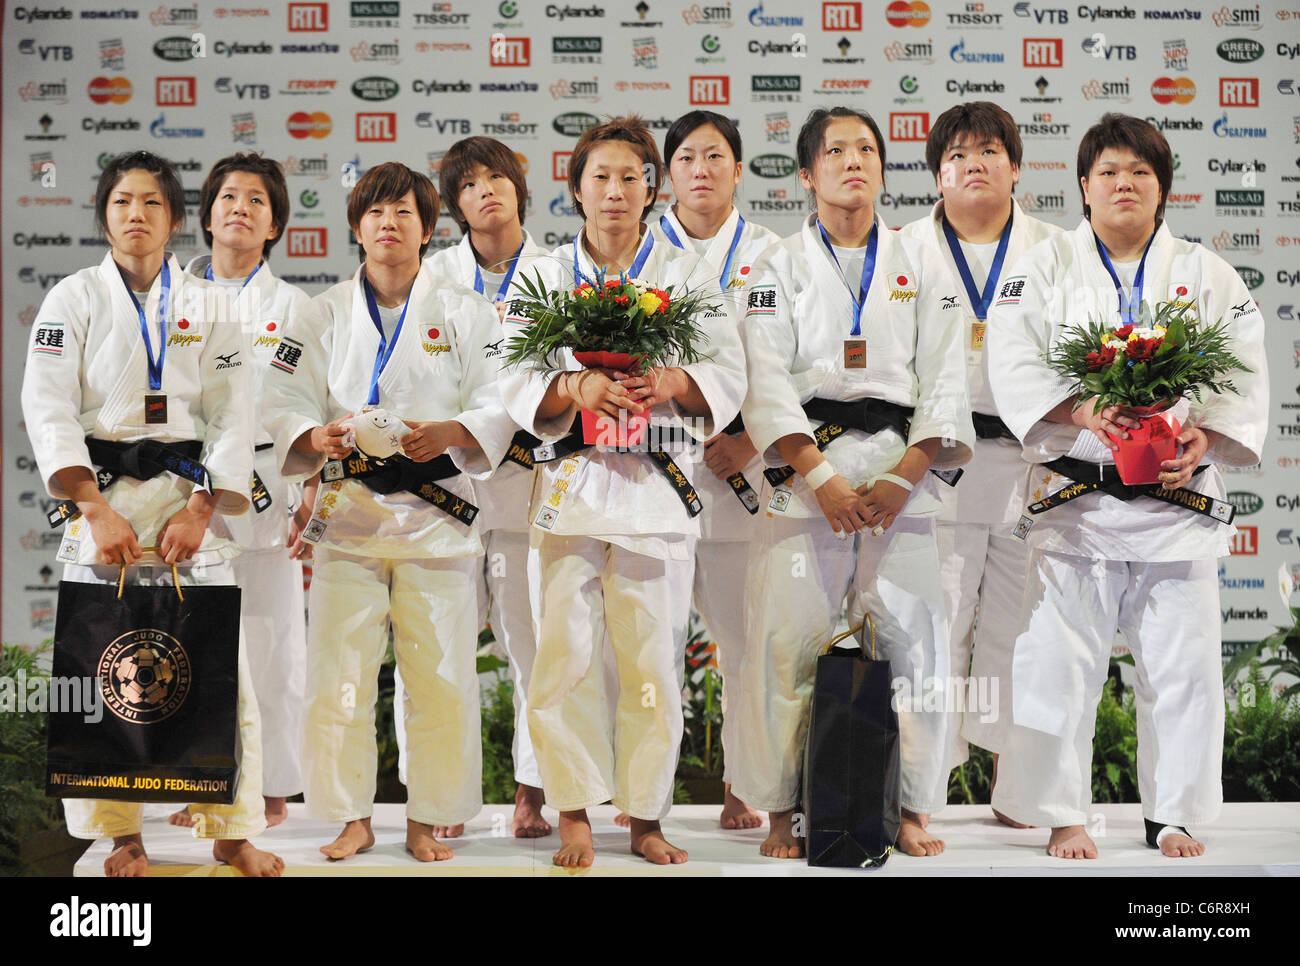 Le Japon (JPN) line-up pour le championnat du monde de judo Paris 2011, les compétitions par équipes. Banque D'Images